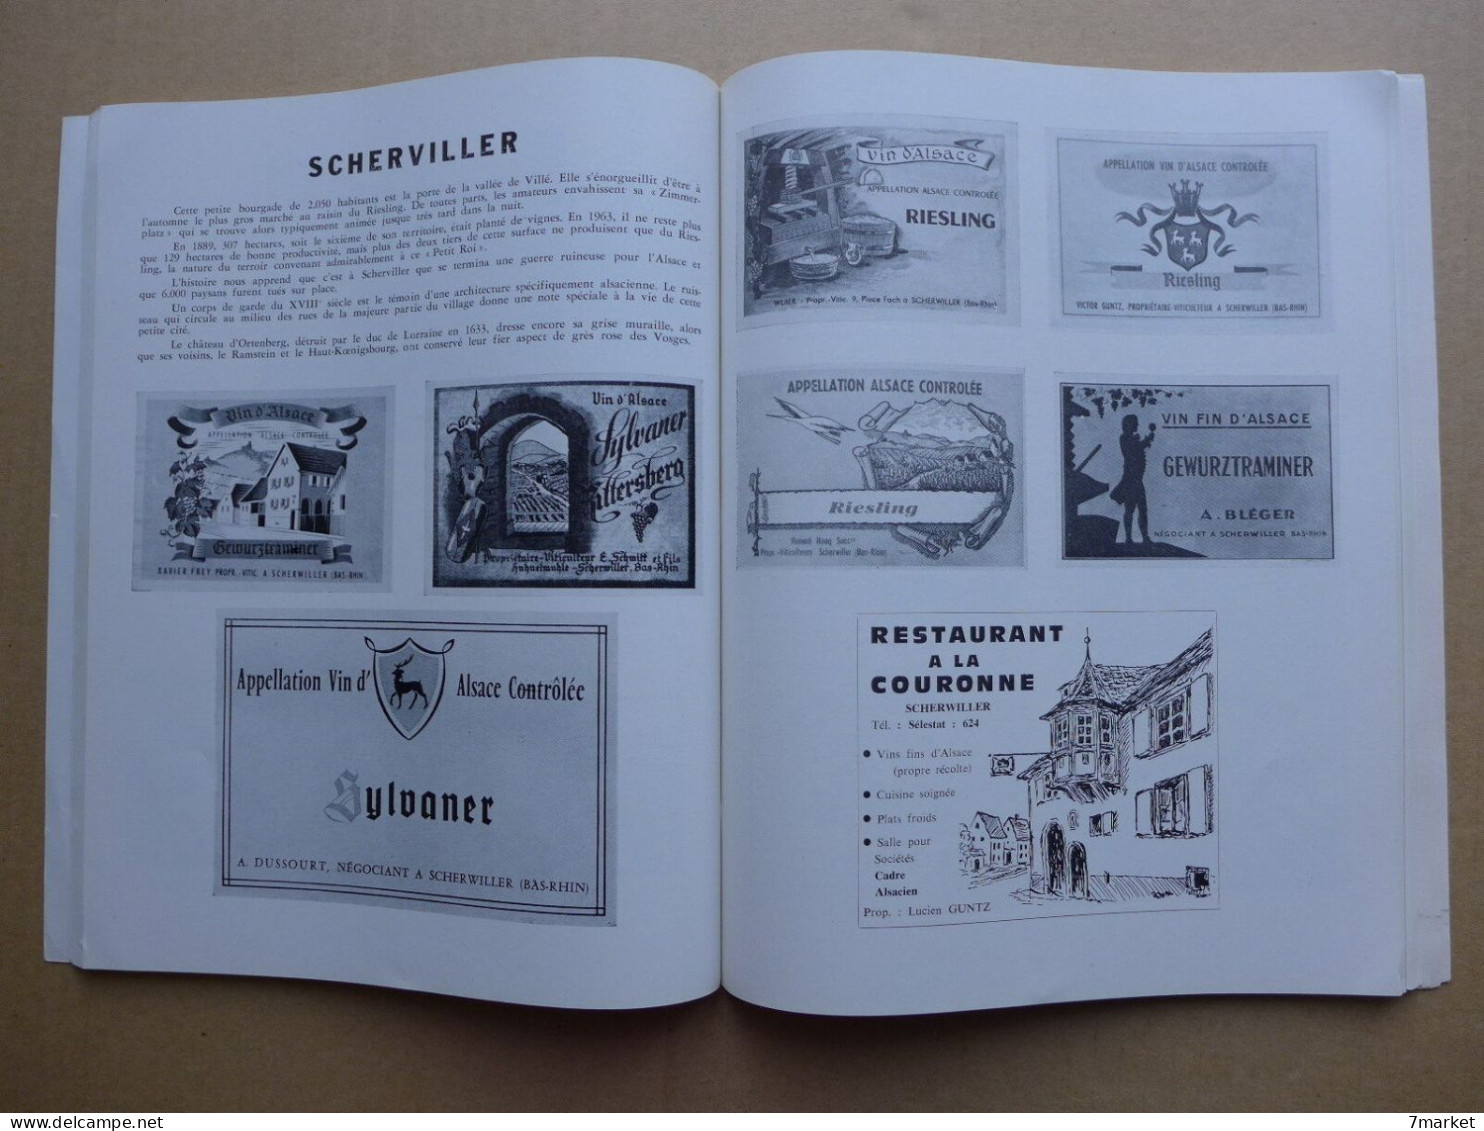 Les routes du Vin - Alsace ( noms viticulteurs  + visuels des étiquettes des vins ); illustrations d'Eugène Noack / 1964